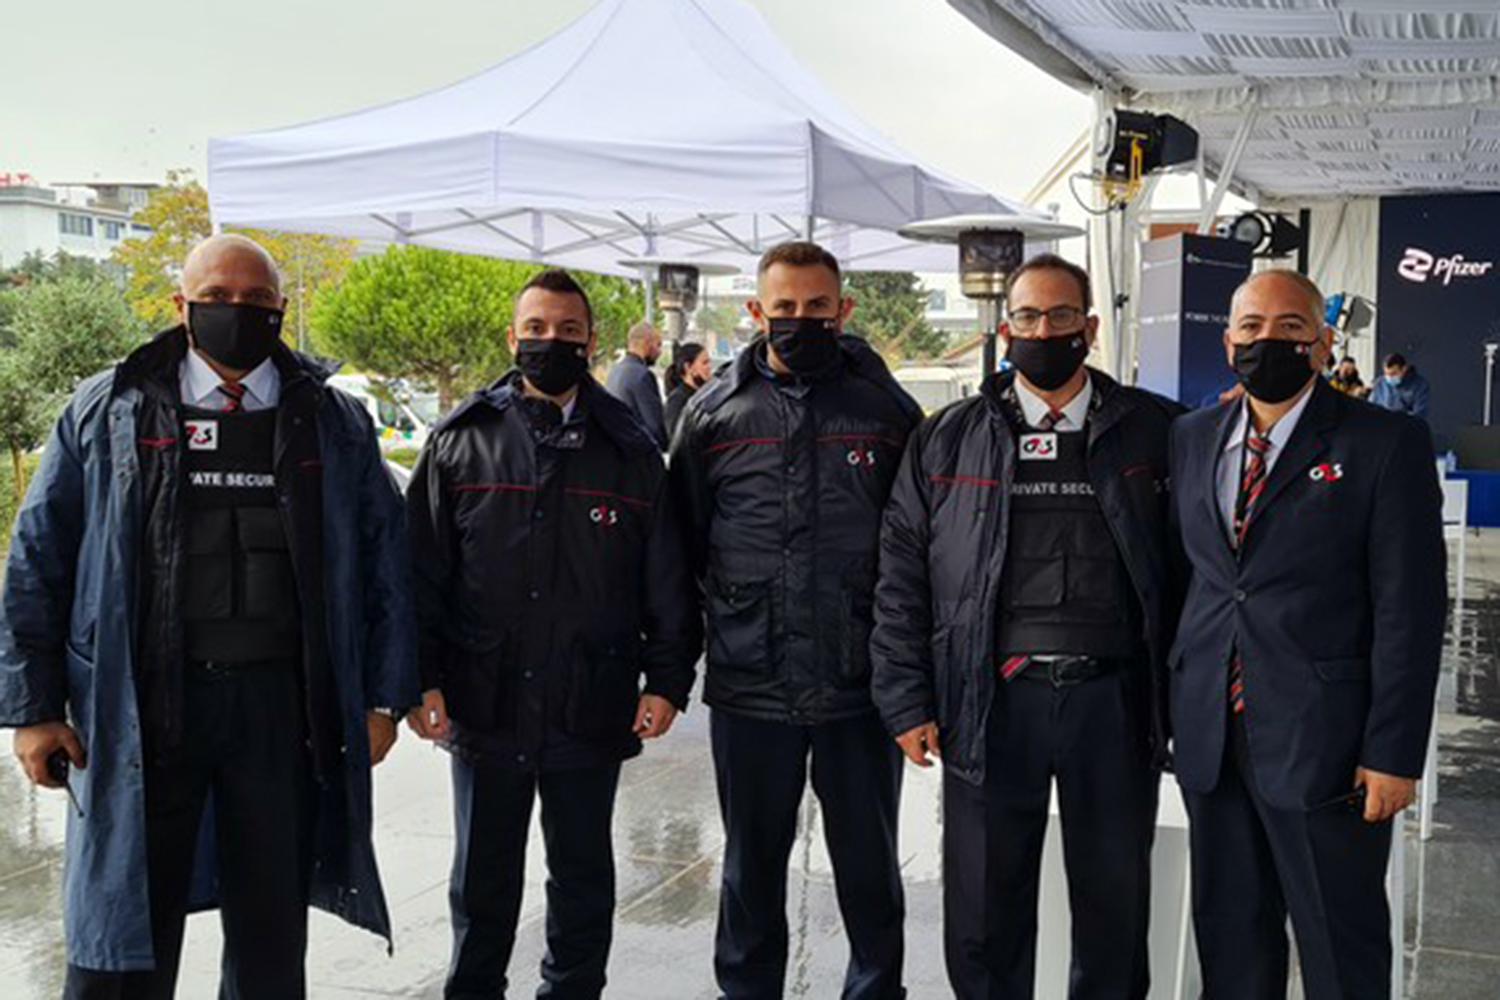 equipo de seguridad privada de G4S en el centro de Pfizer en Grecia